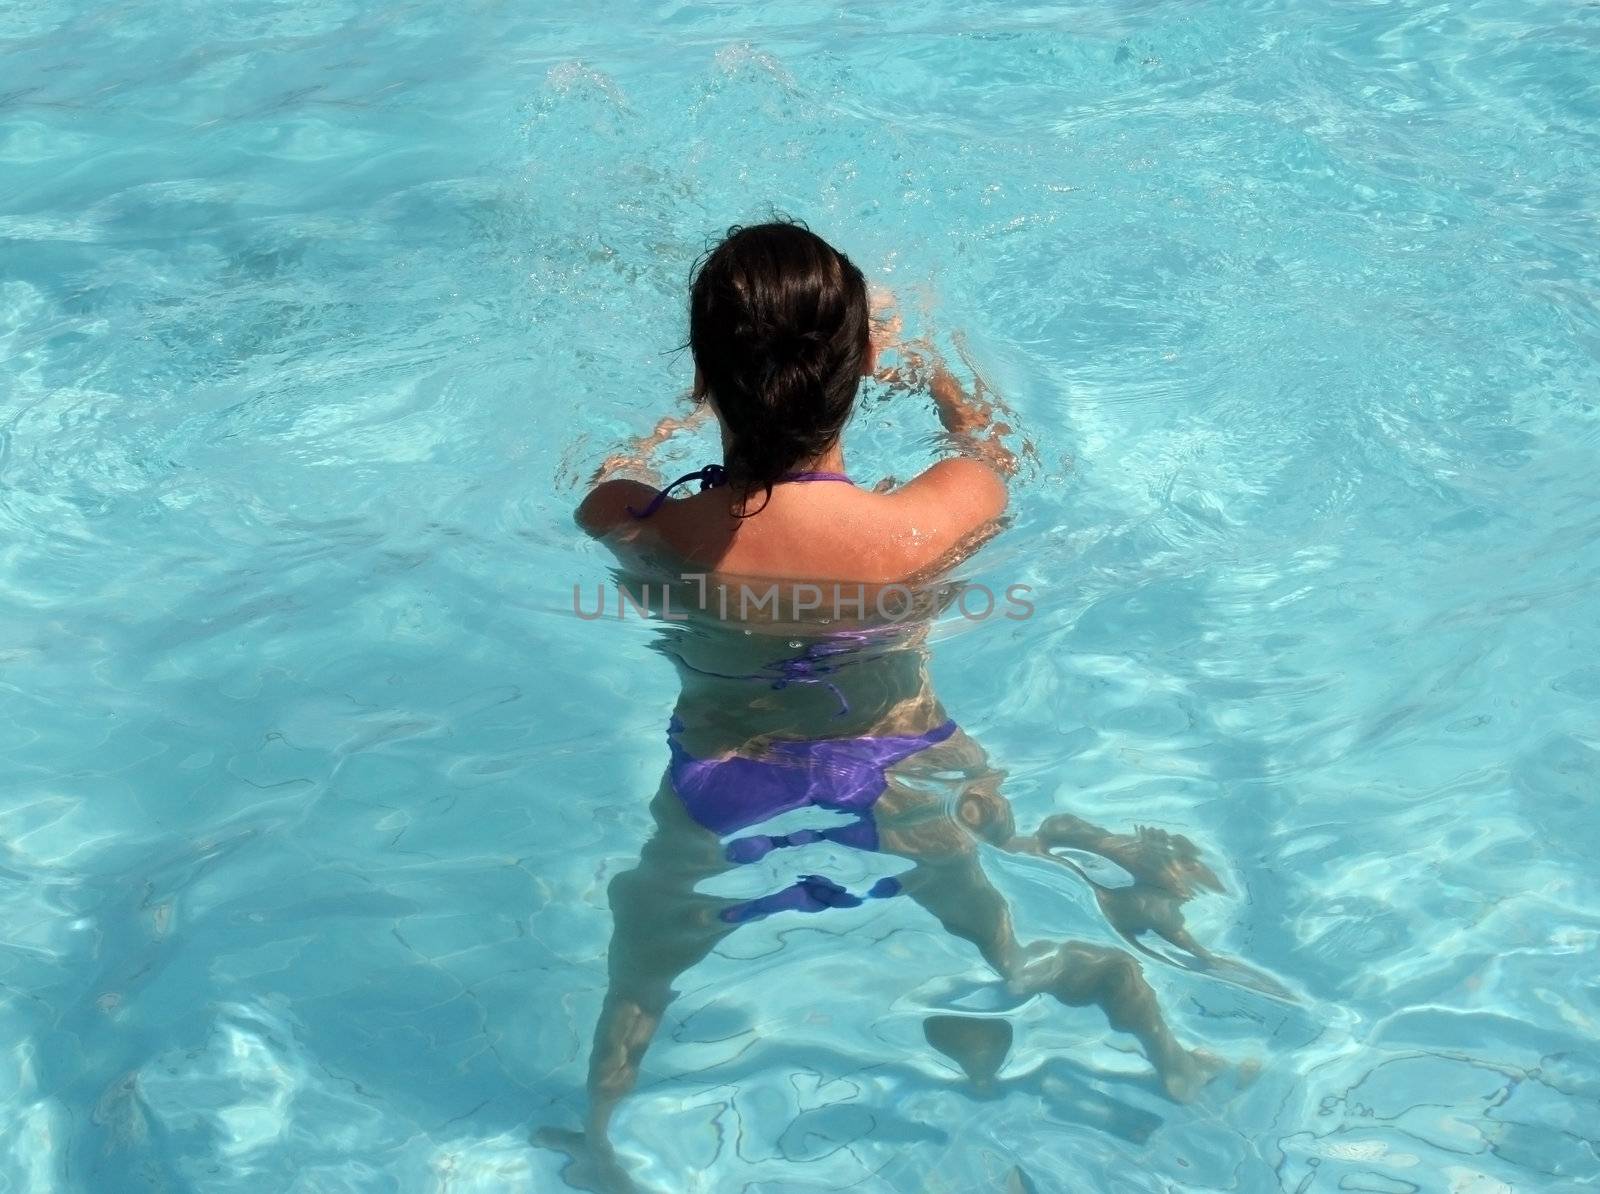 The girl in pool, aerobics in water